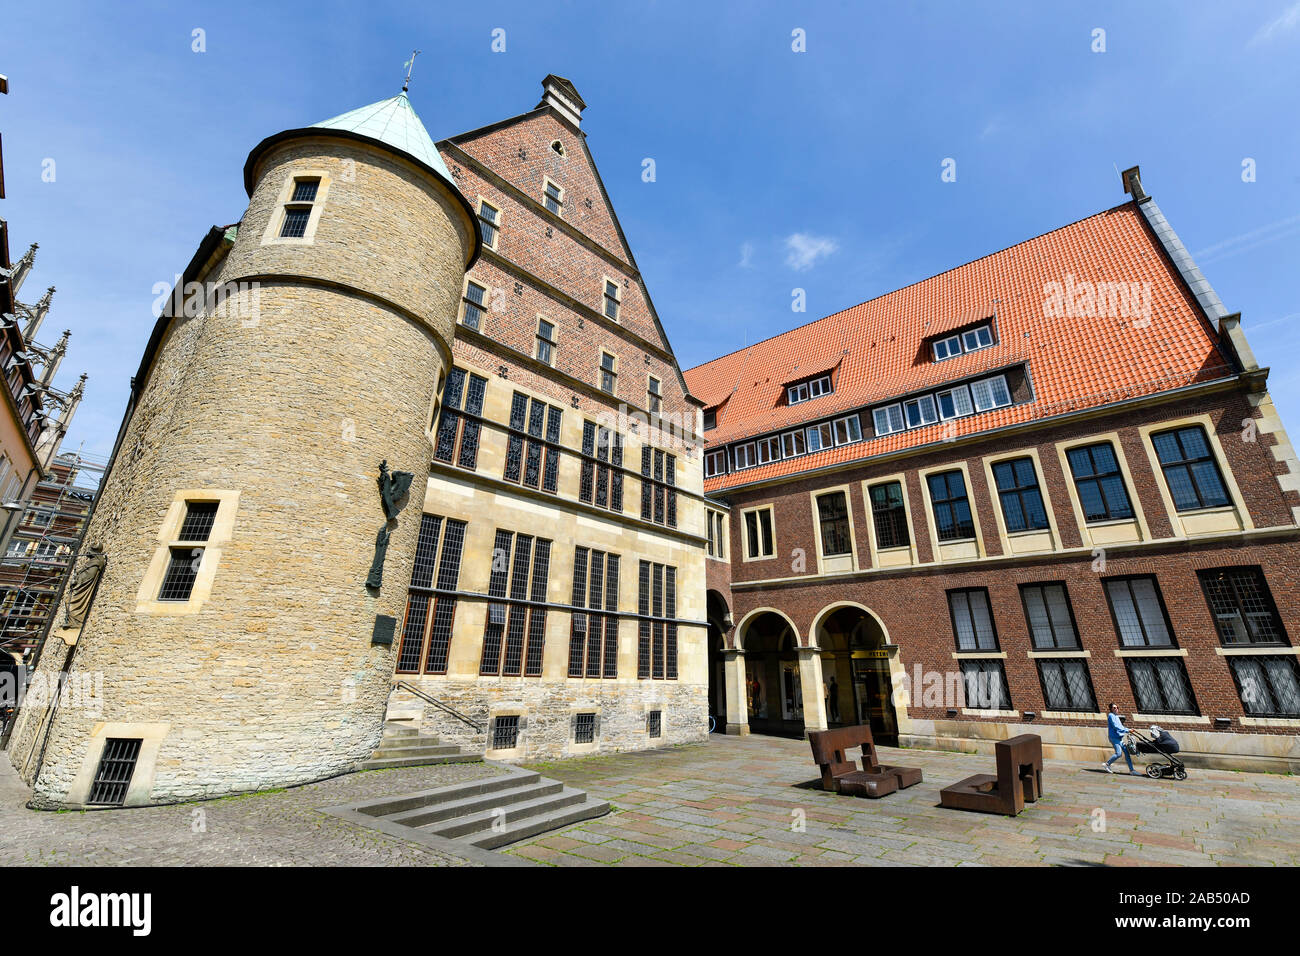 Rückansicht, Hinterhof, Historisches Rathaus, Platz des Westfälischen Friedens, Münster, Nordrhein-Westfalen, Deutschland Stock Photo